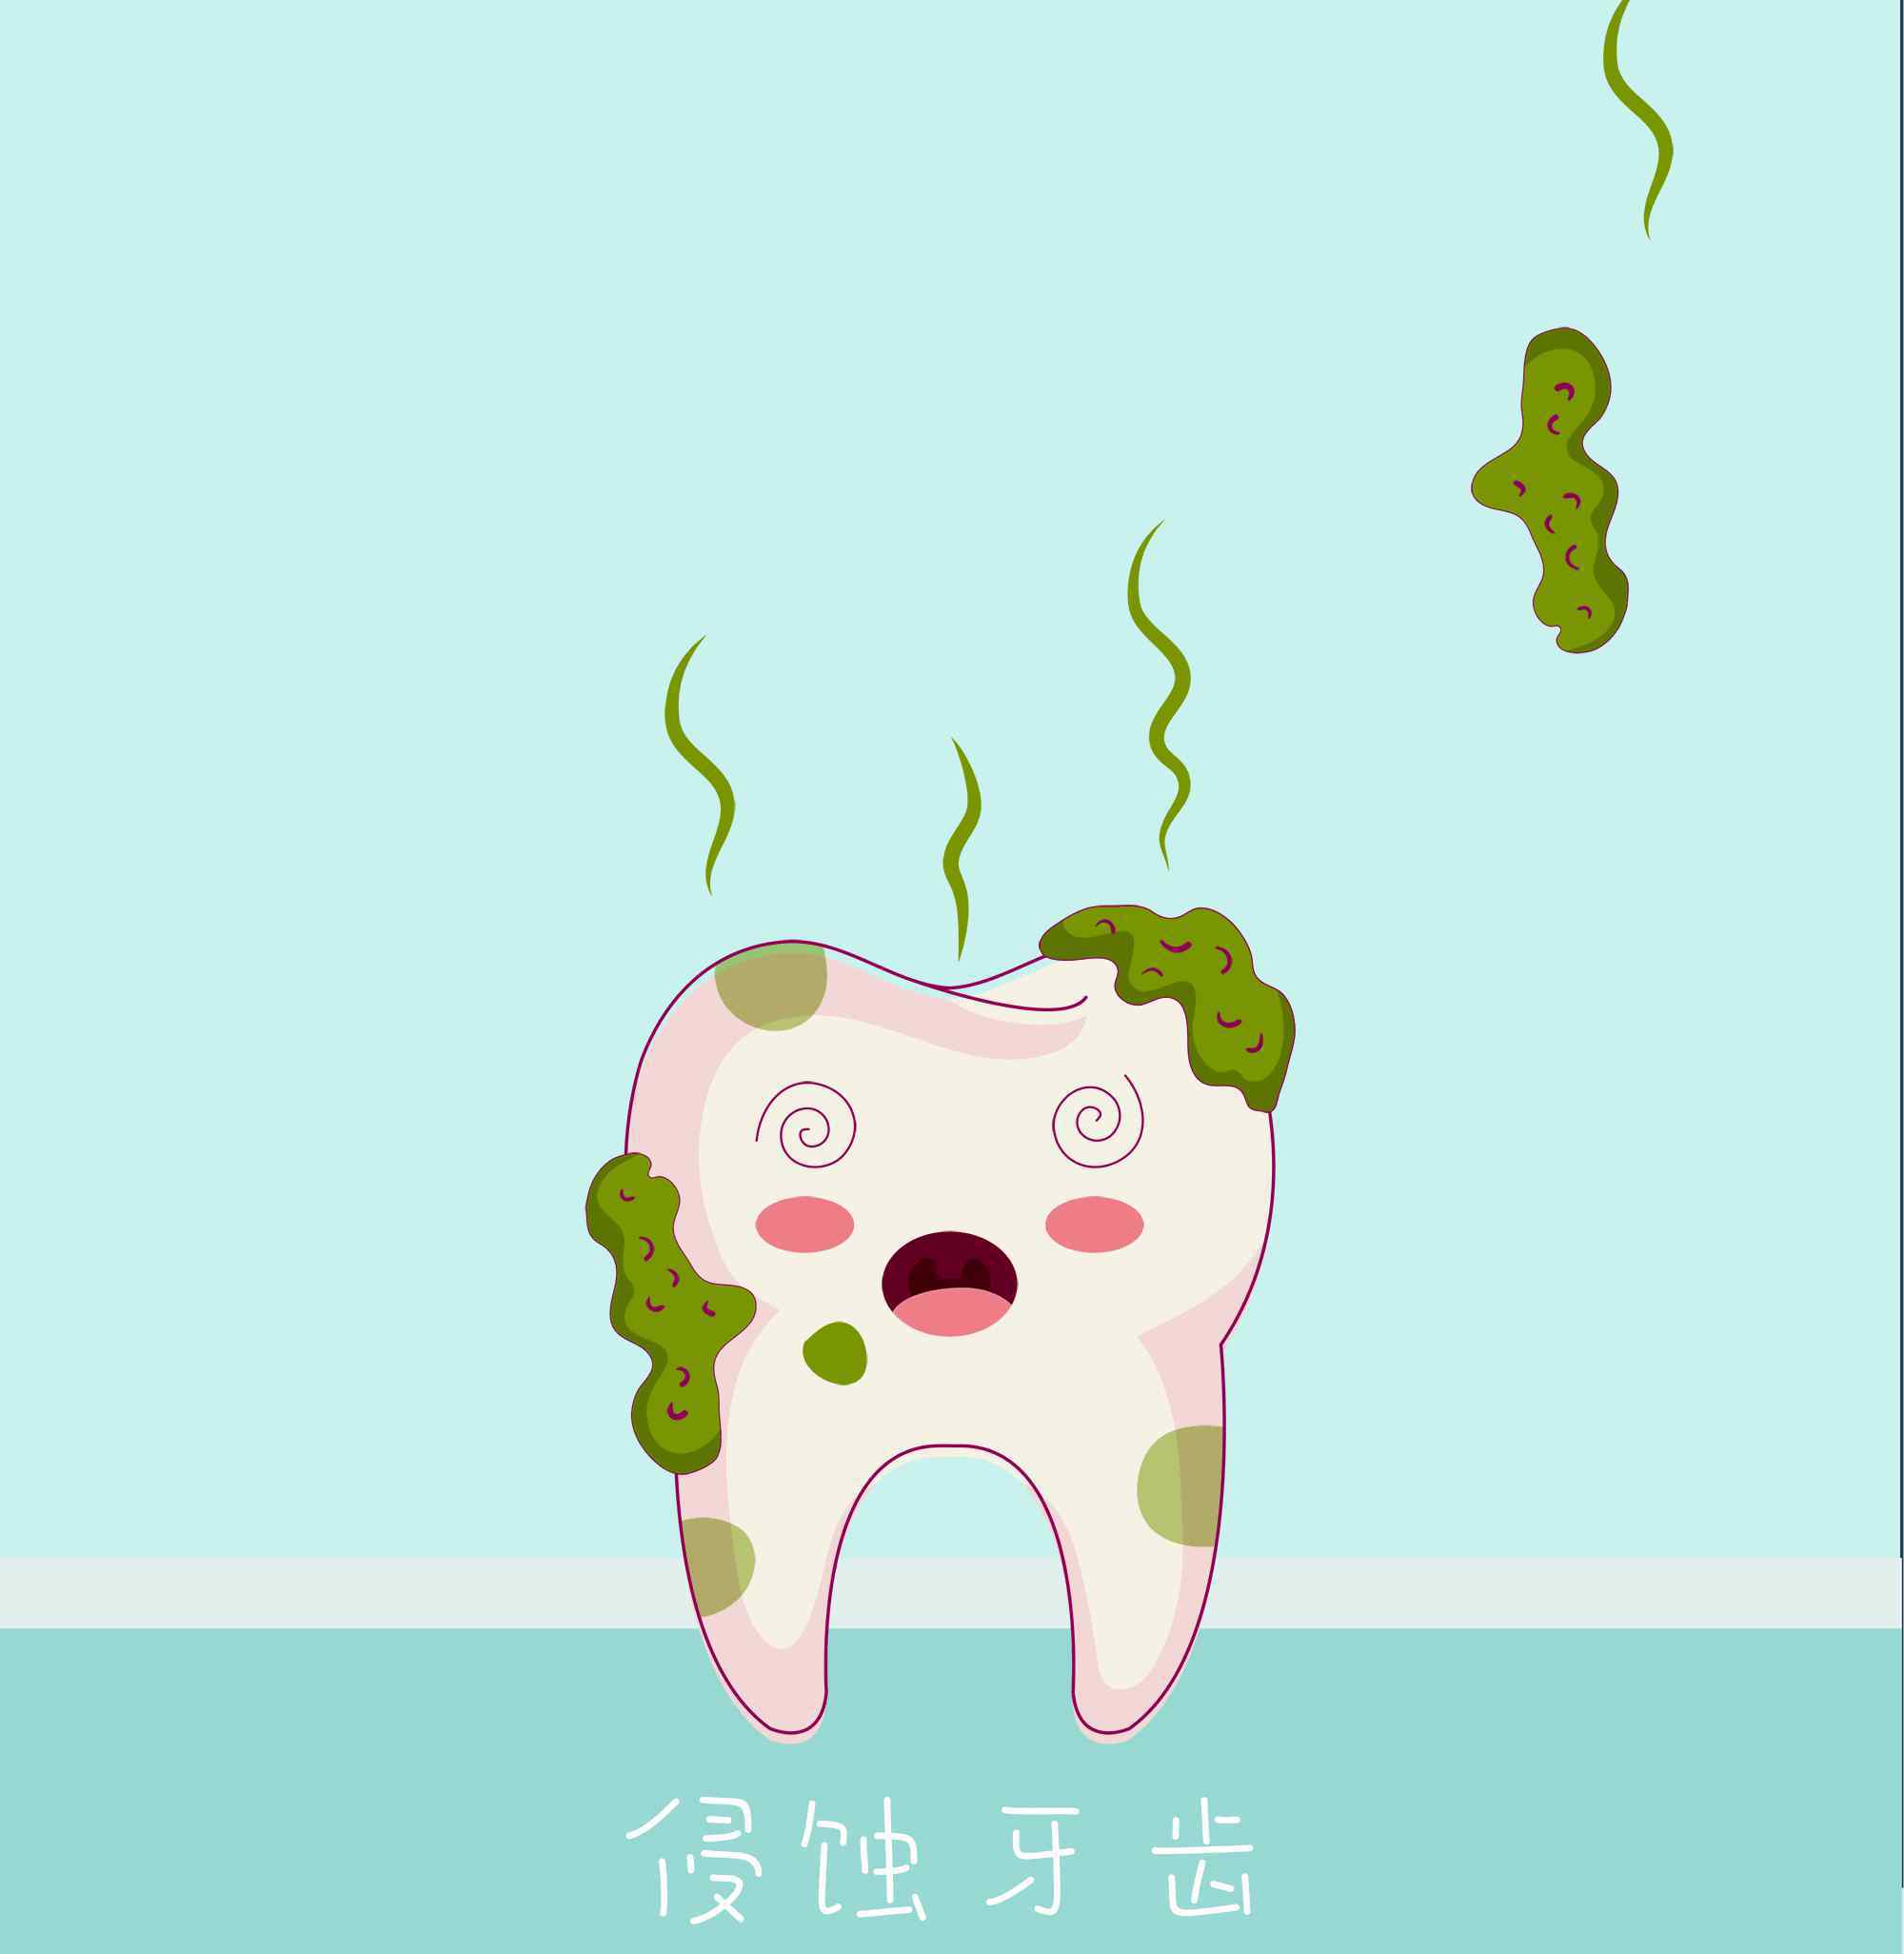 牙齿菌斑图片 【腐蚀人类牙齿】有些人生来都没见过的牙菌斑图片